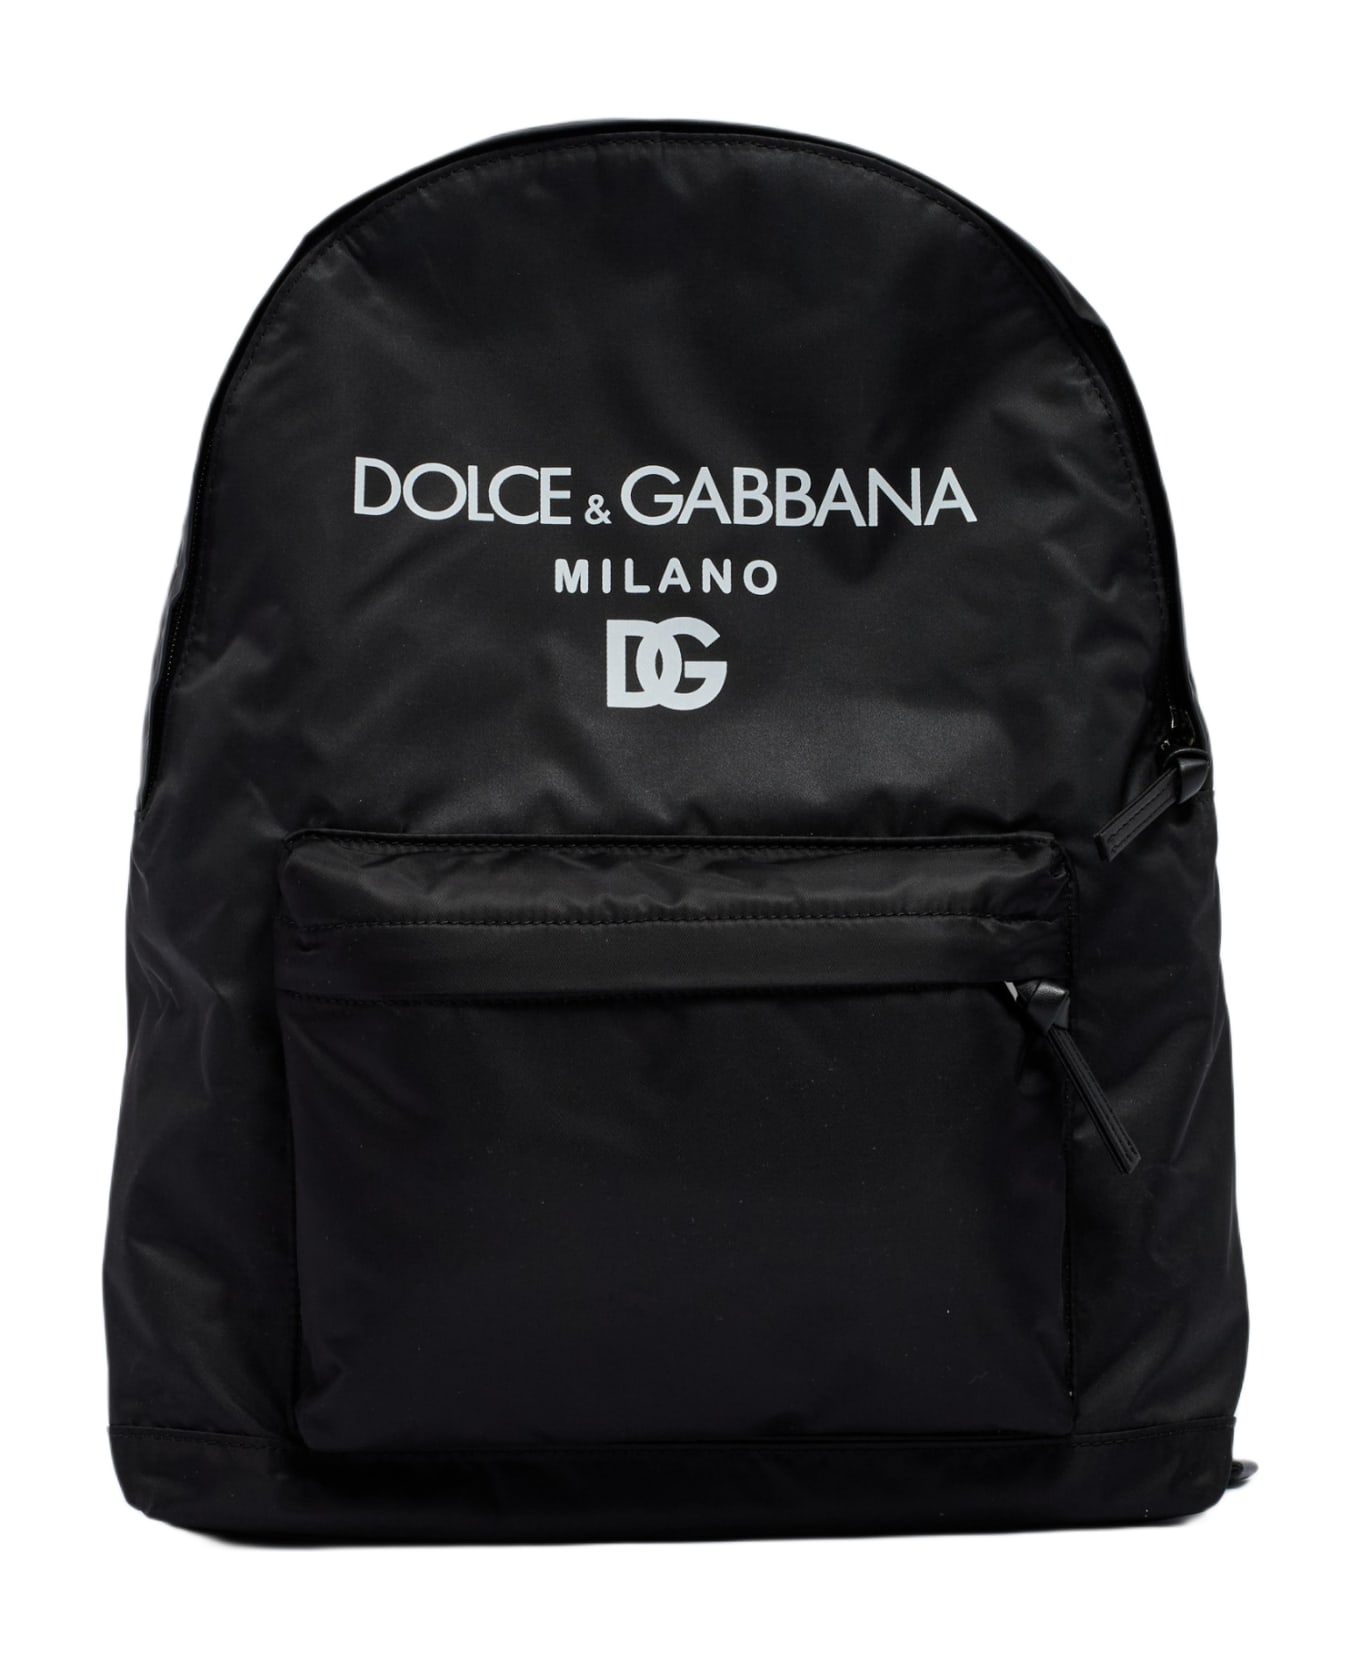 Dolce & Gabbana Backpack Backpack - NERO